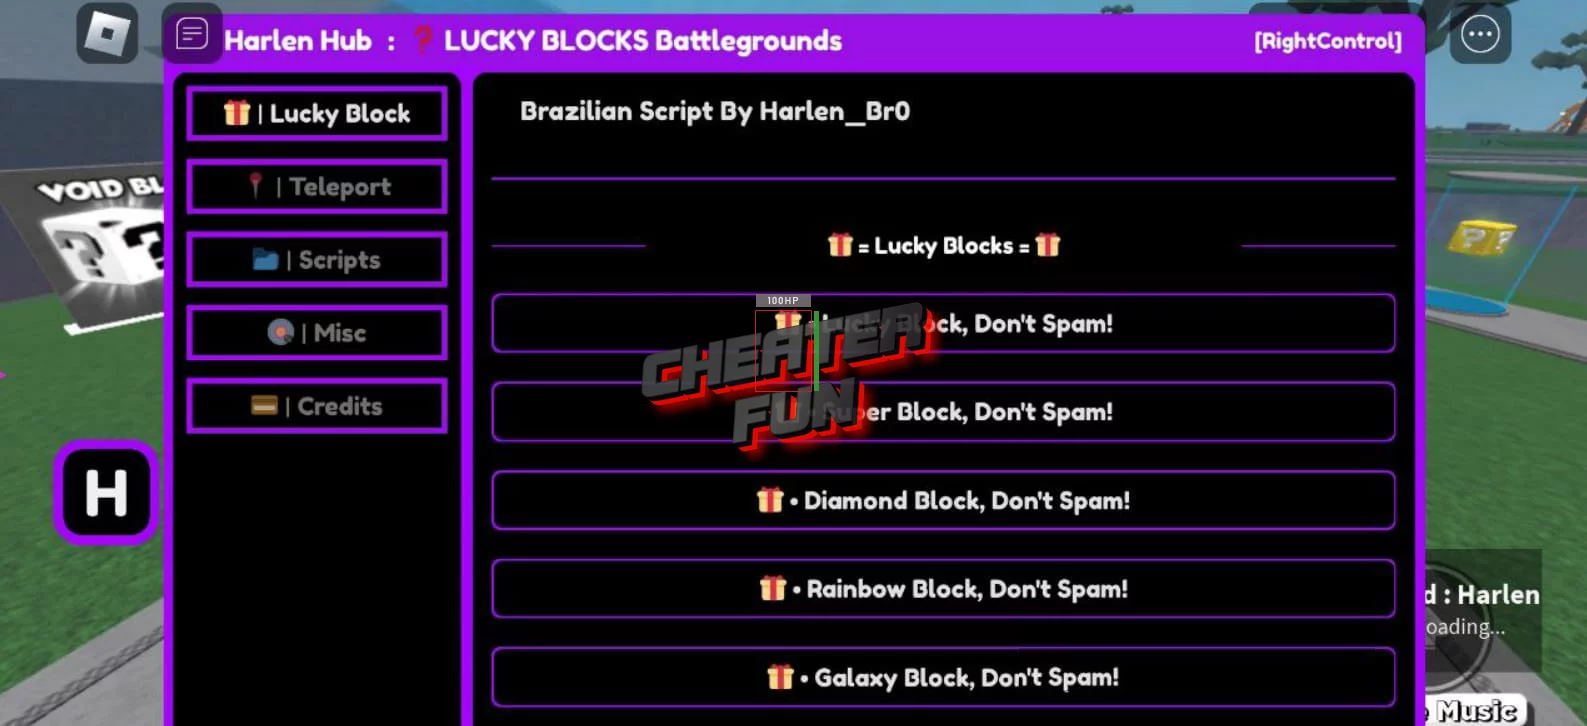 LUCKY BLOCKS Battlegrounds [Players, Get all gears, Lucky Blocks] Scripts